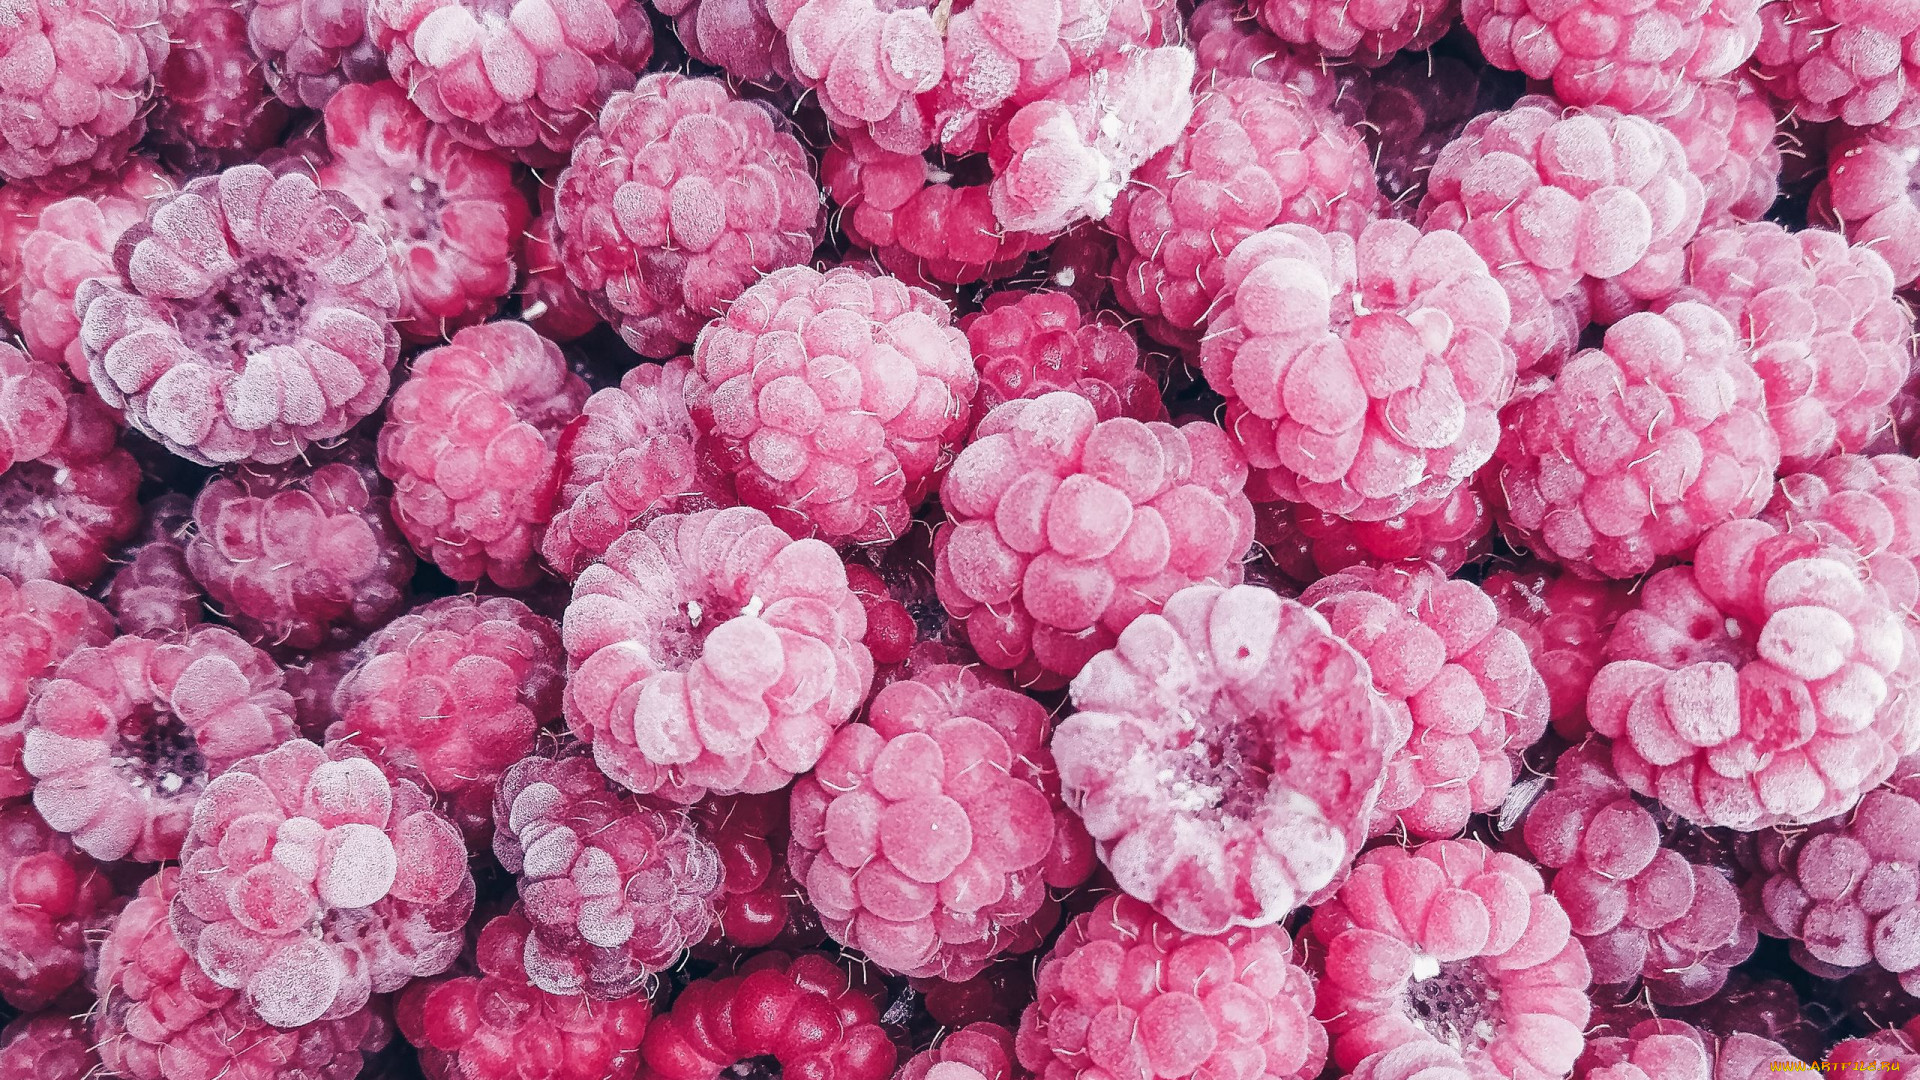 General 1920x1080 food fruit berries raspberries colorful frost